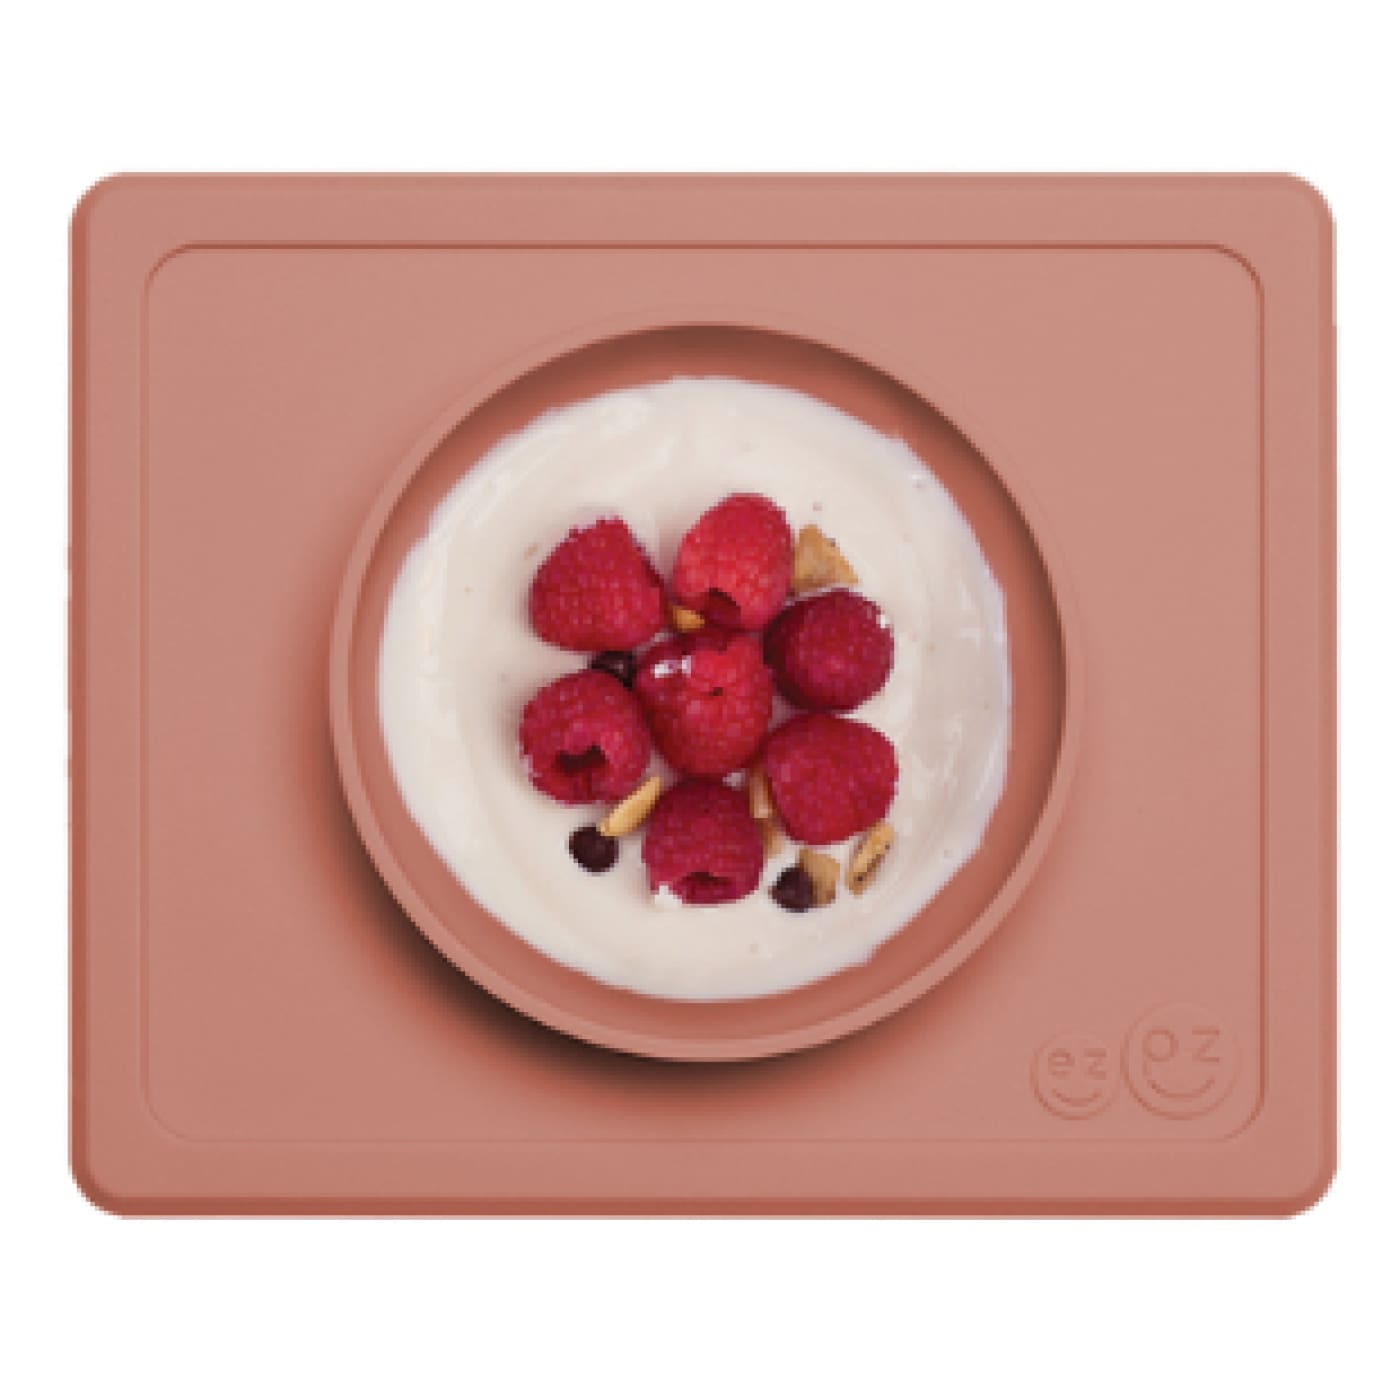 EZPZ Mini Bowl - Sienna - Sienna - NURSING & FEEDING - CUTLERY/PLATES/BOWLS/TOYS